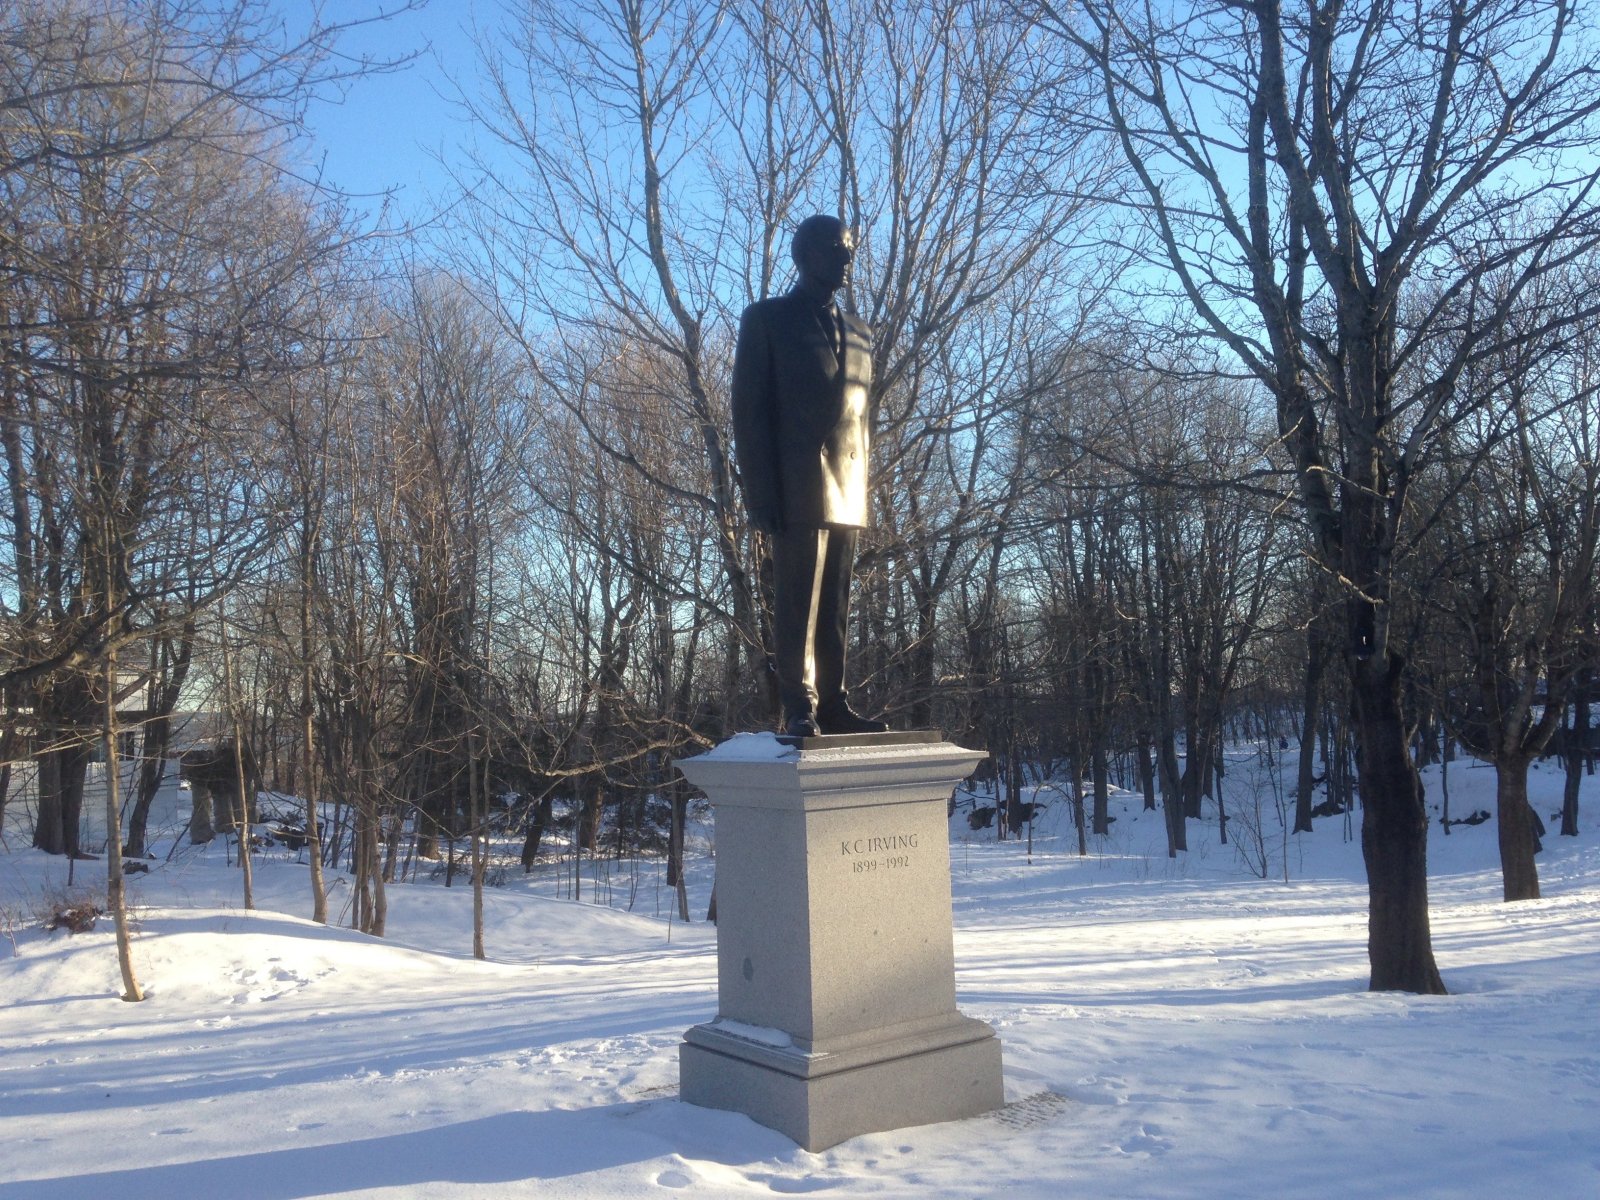 K.C. Irving, Irving Oil, Irvings, statue